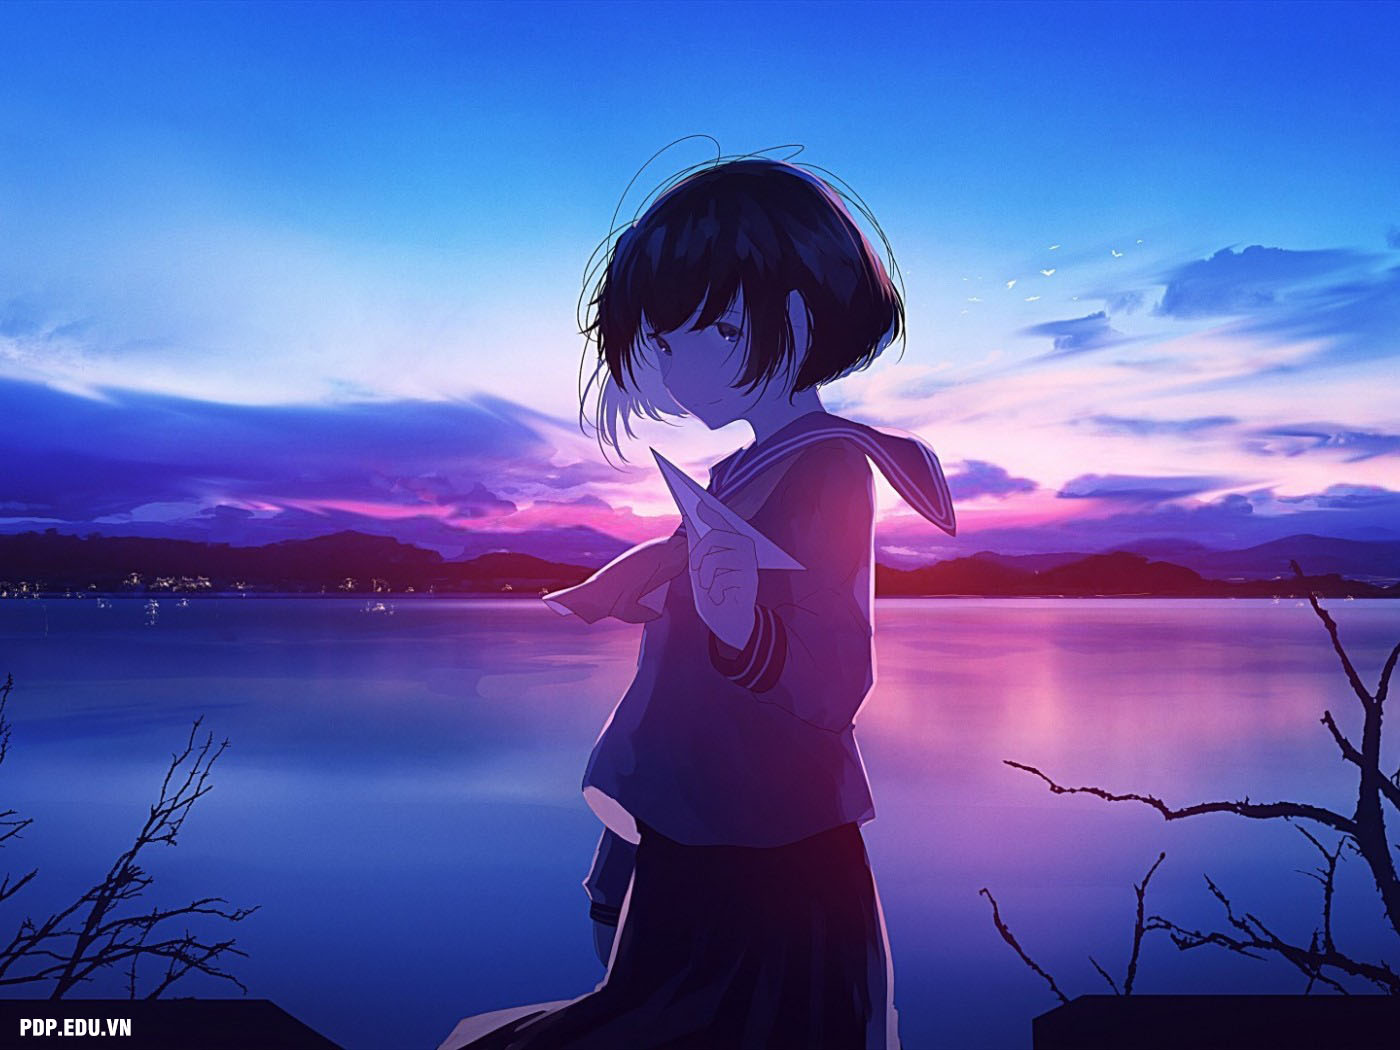 Hình ảnh anime cô đơn, buồn đầy tâm trạng đẹp nhất - Trường THCS ...